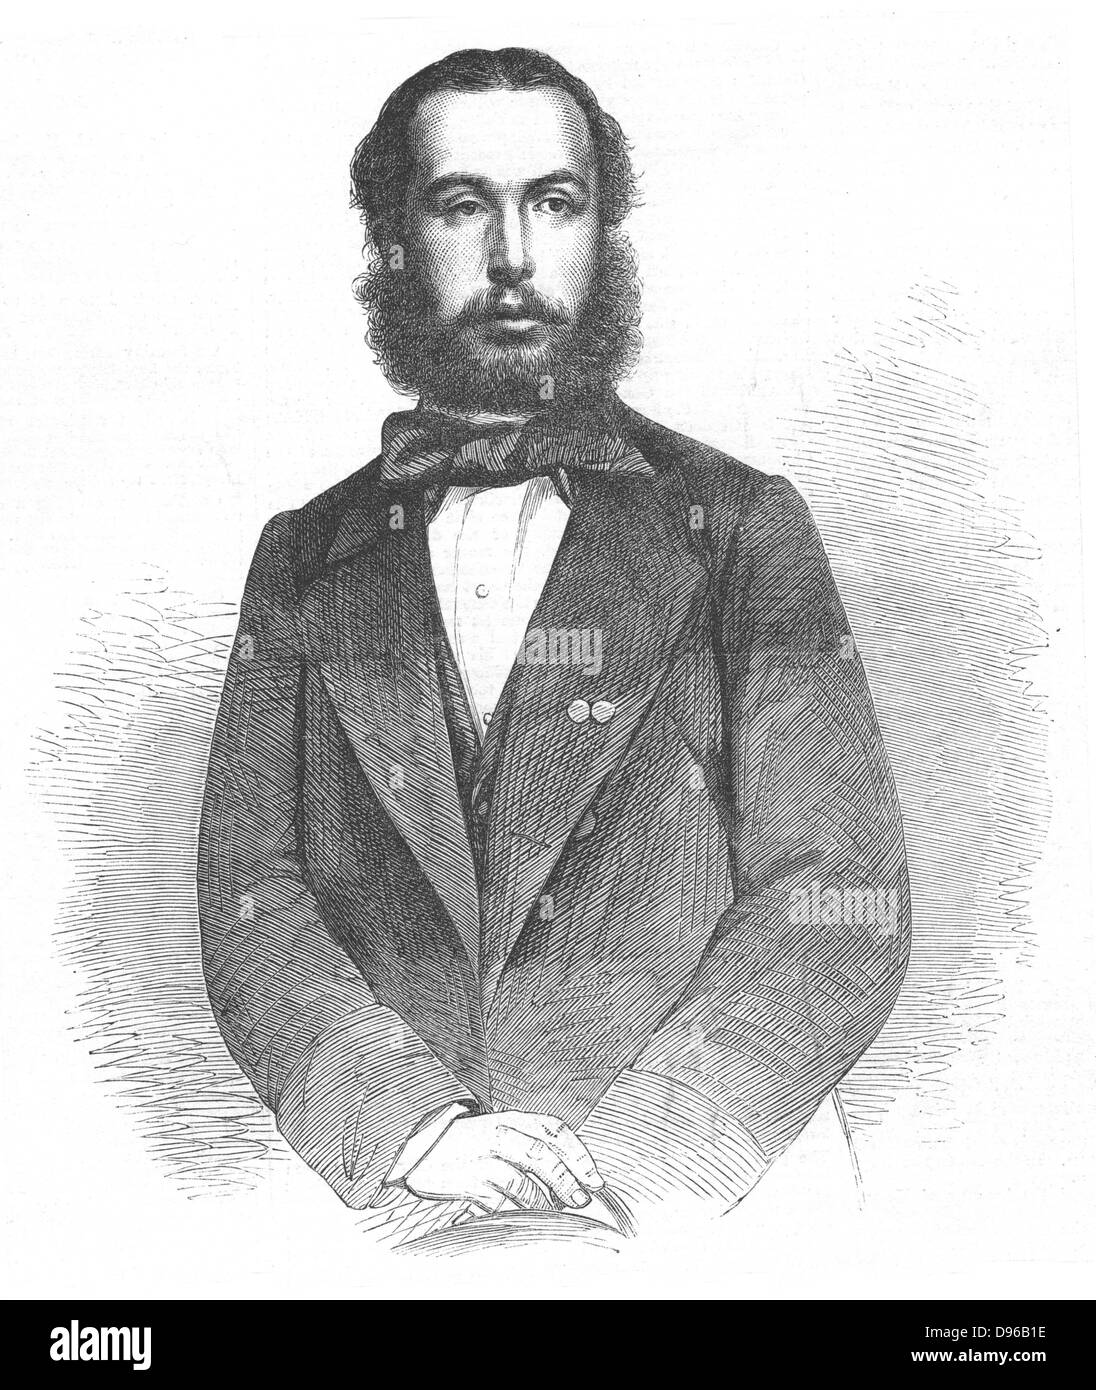 Maximilian (1832-1867) Kaiser von Mexiko aus dem Jahr 1864, erschossen 9. Juni 1867. Holzstich von 1864. Stockfoto